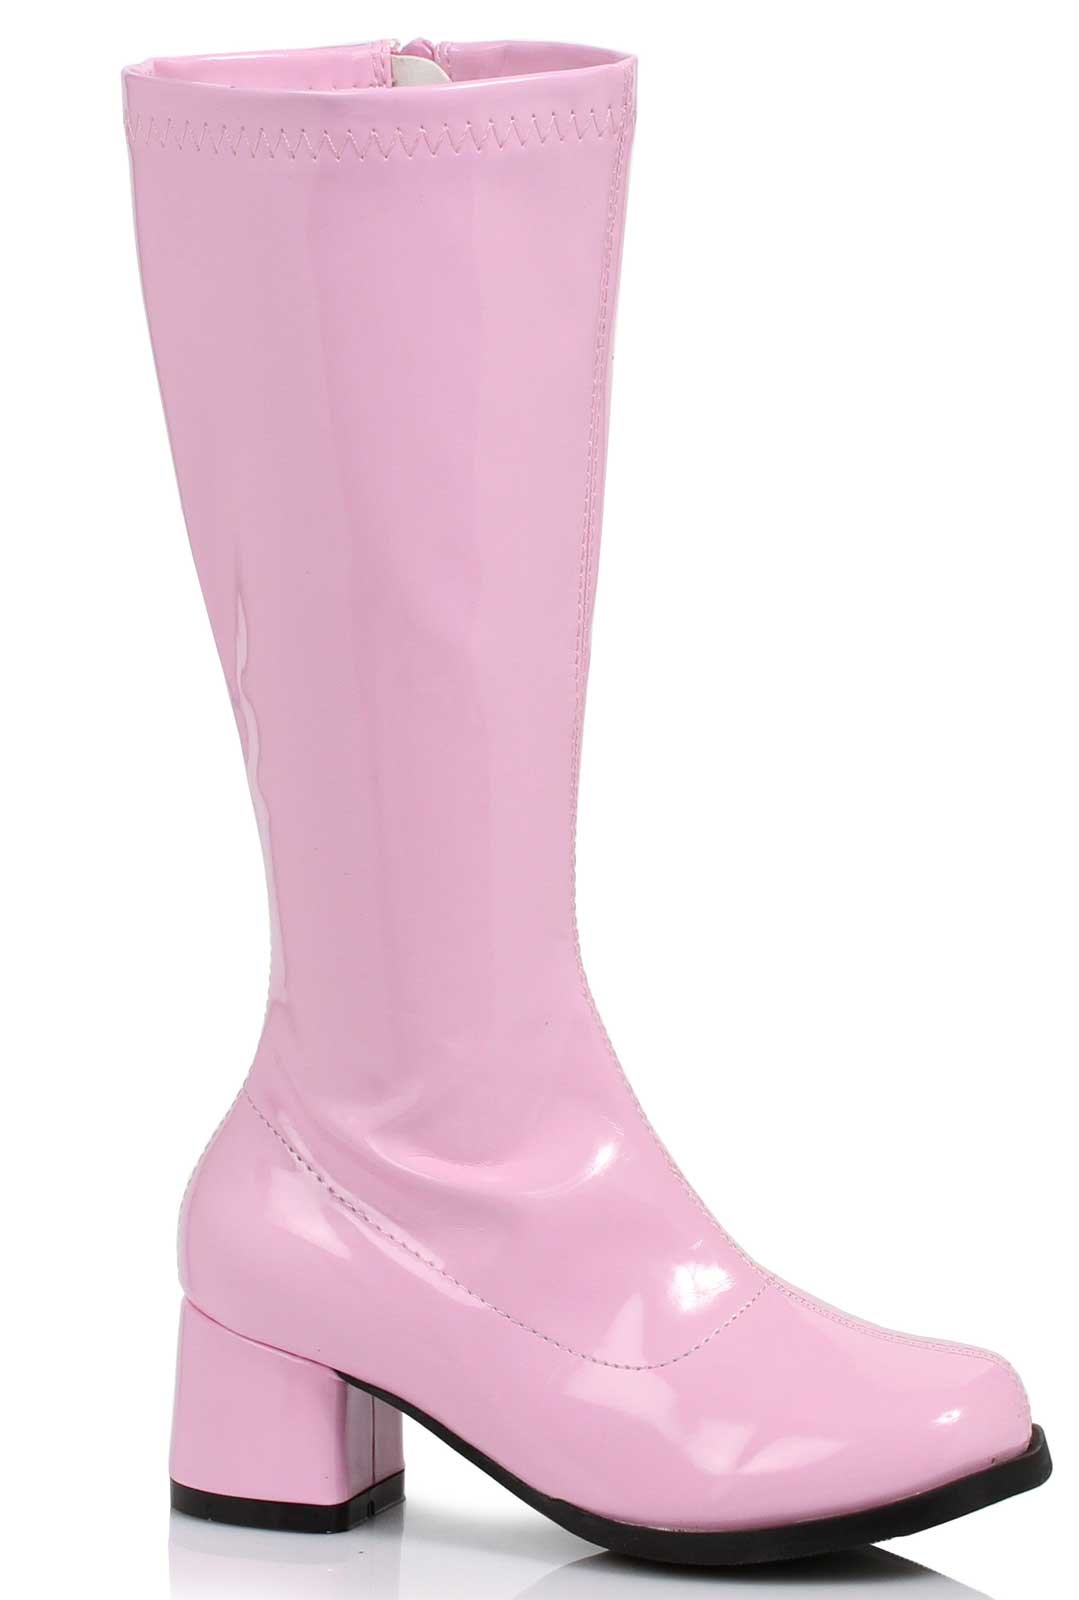 Dora Pink Child Boots